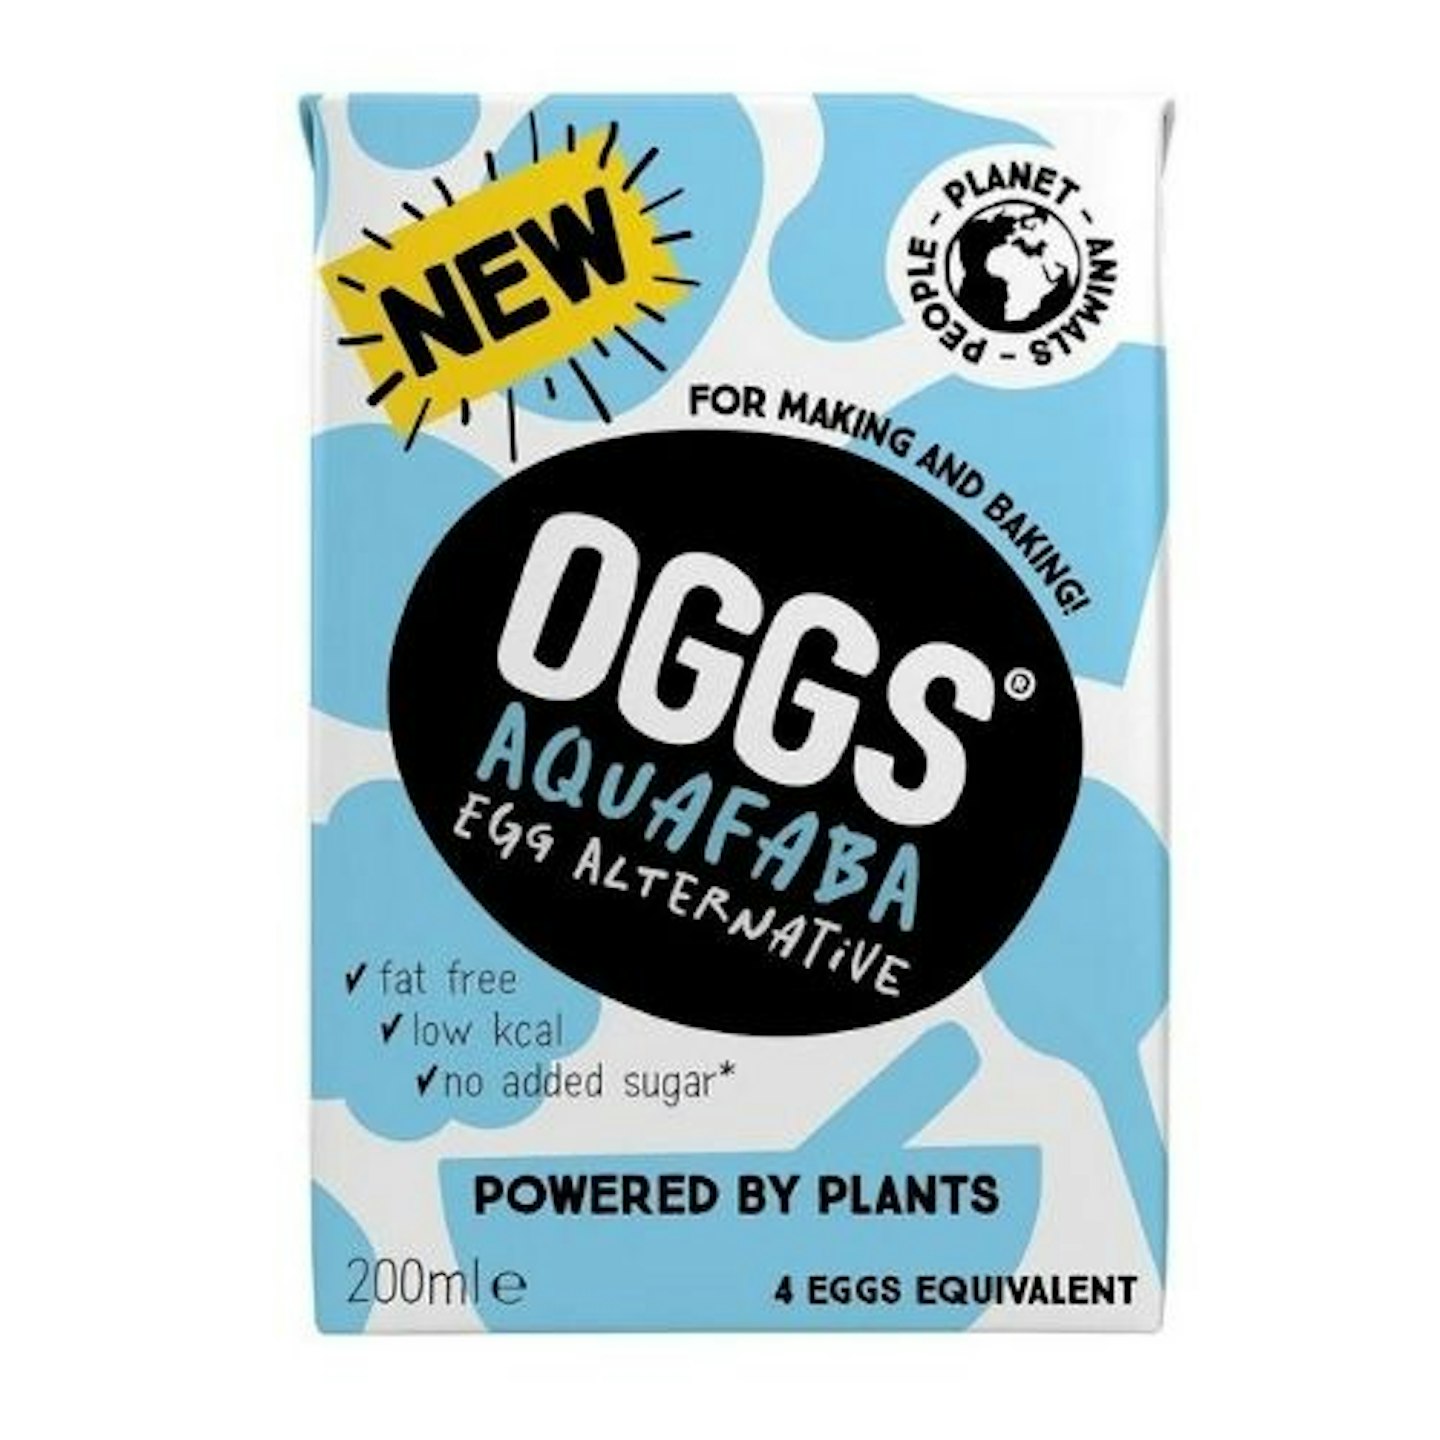 OGGS - Aquafaba Egg Substitute (200ml)